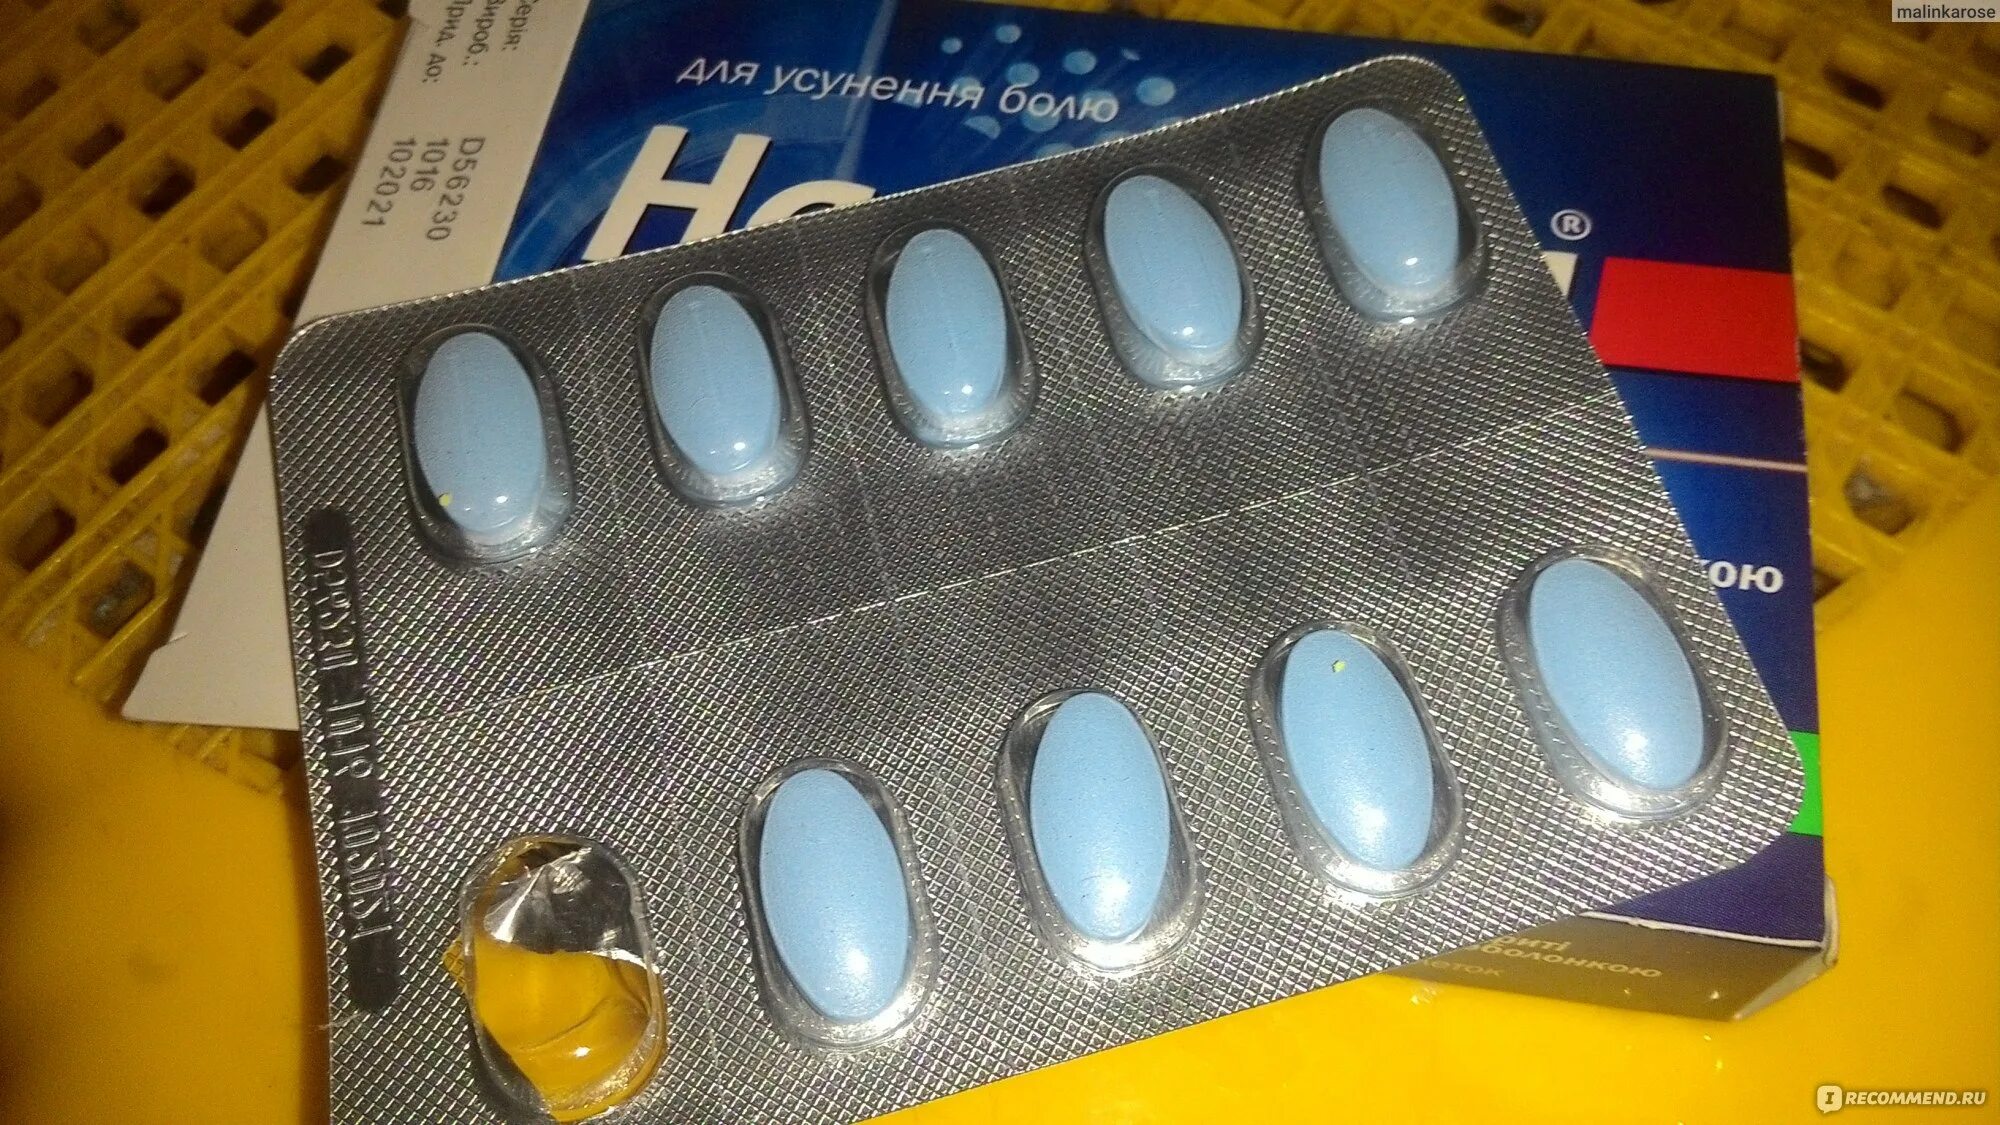 Сильное обезболивающее название. Голубые таблетки обезболивающие. Синие таблетки обезболивающие. Синие обезоболевающие табл. Таблетка обезболивающая голубая.